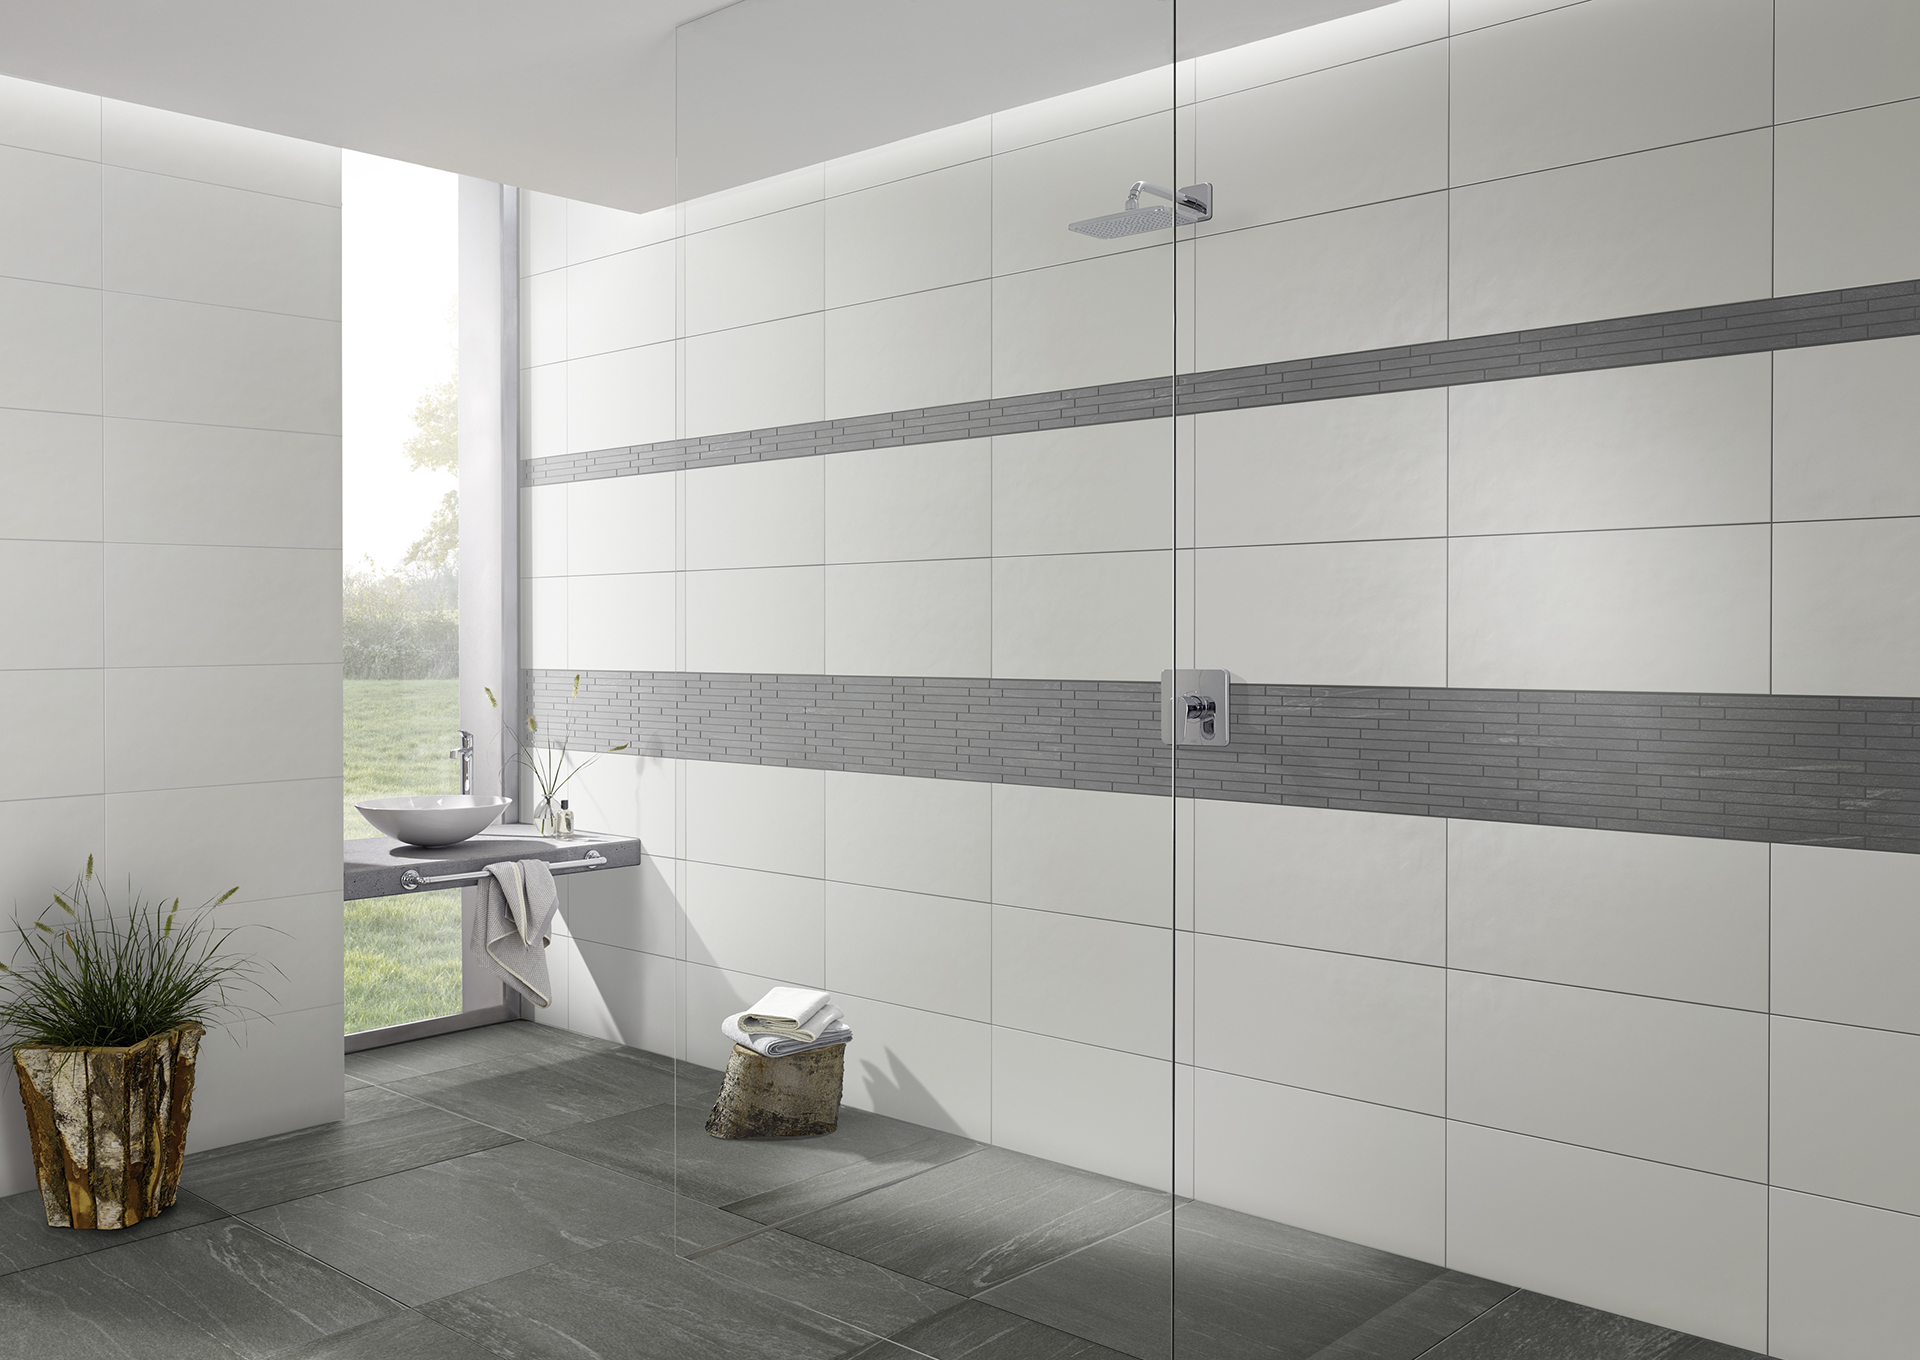 aria Y30525001 white 30x60 wall tile, Y30526001 grey 25x60 mosaic